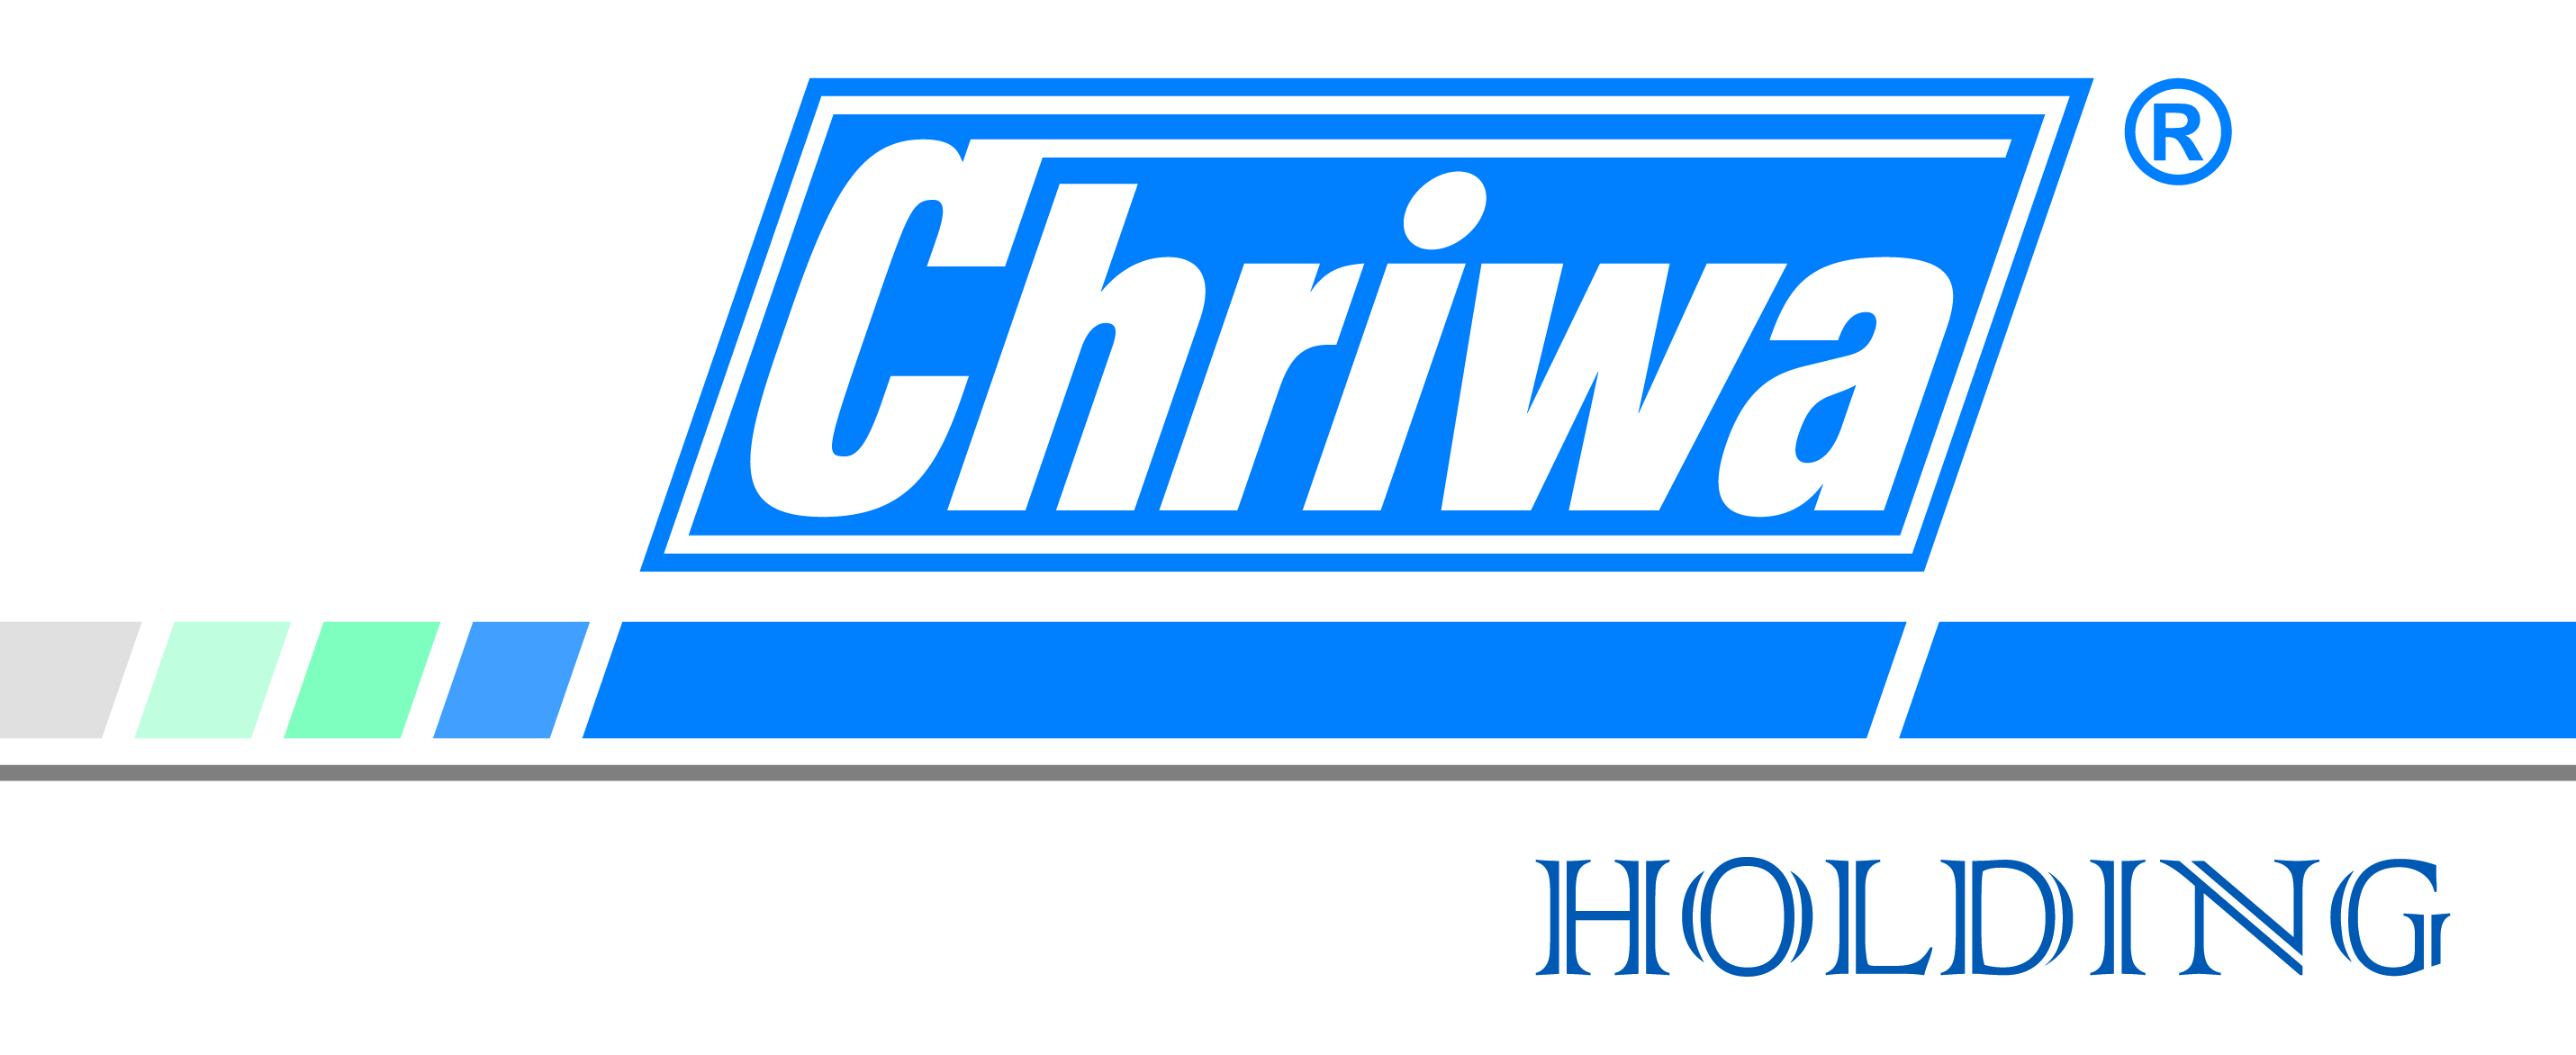 Current Chriwa Holding logo